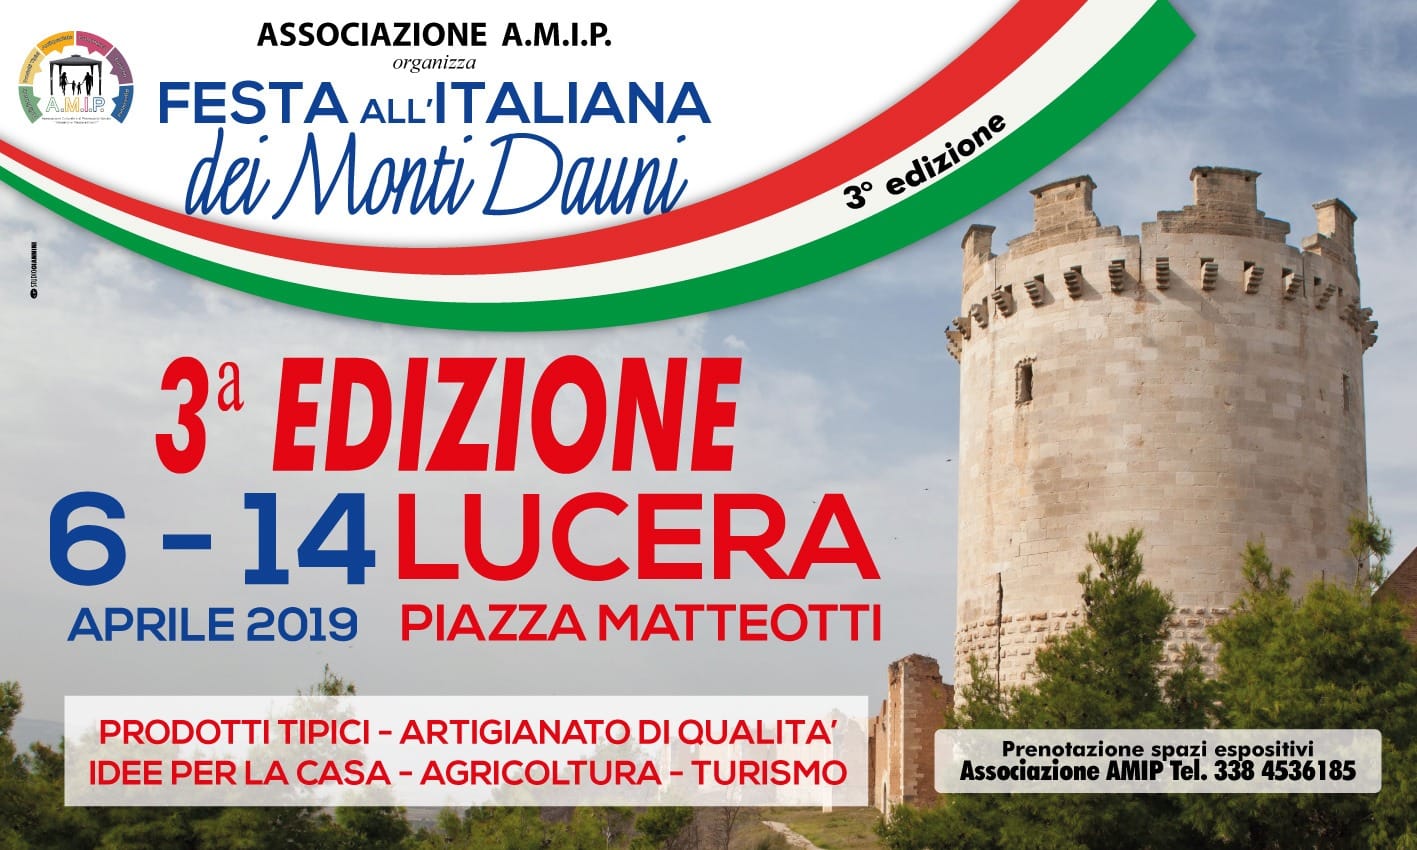 Terza EdizioneÂ della Festa all'Italiana dei Monti Dauni